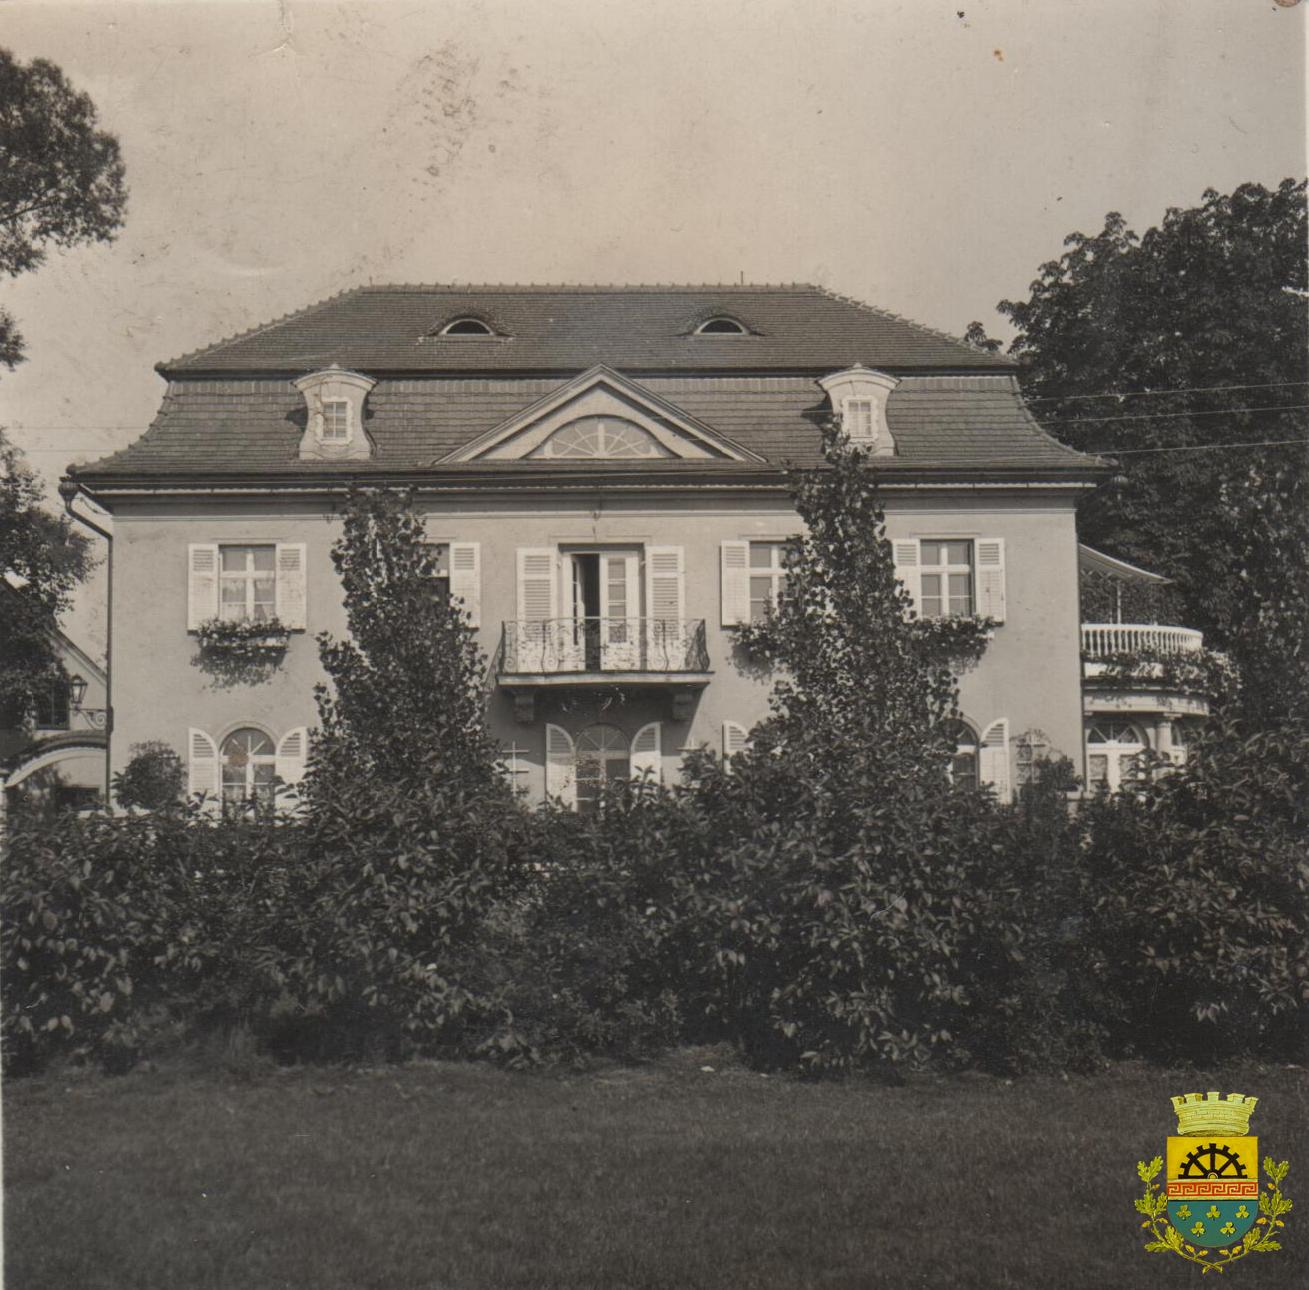 Strobachova vila čp. 380, postavena v roce 1930